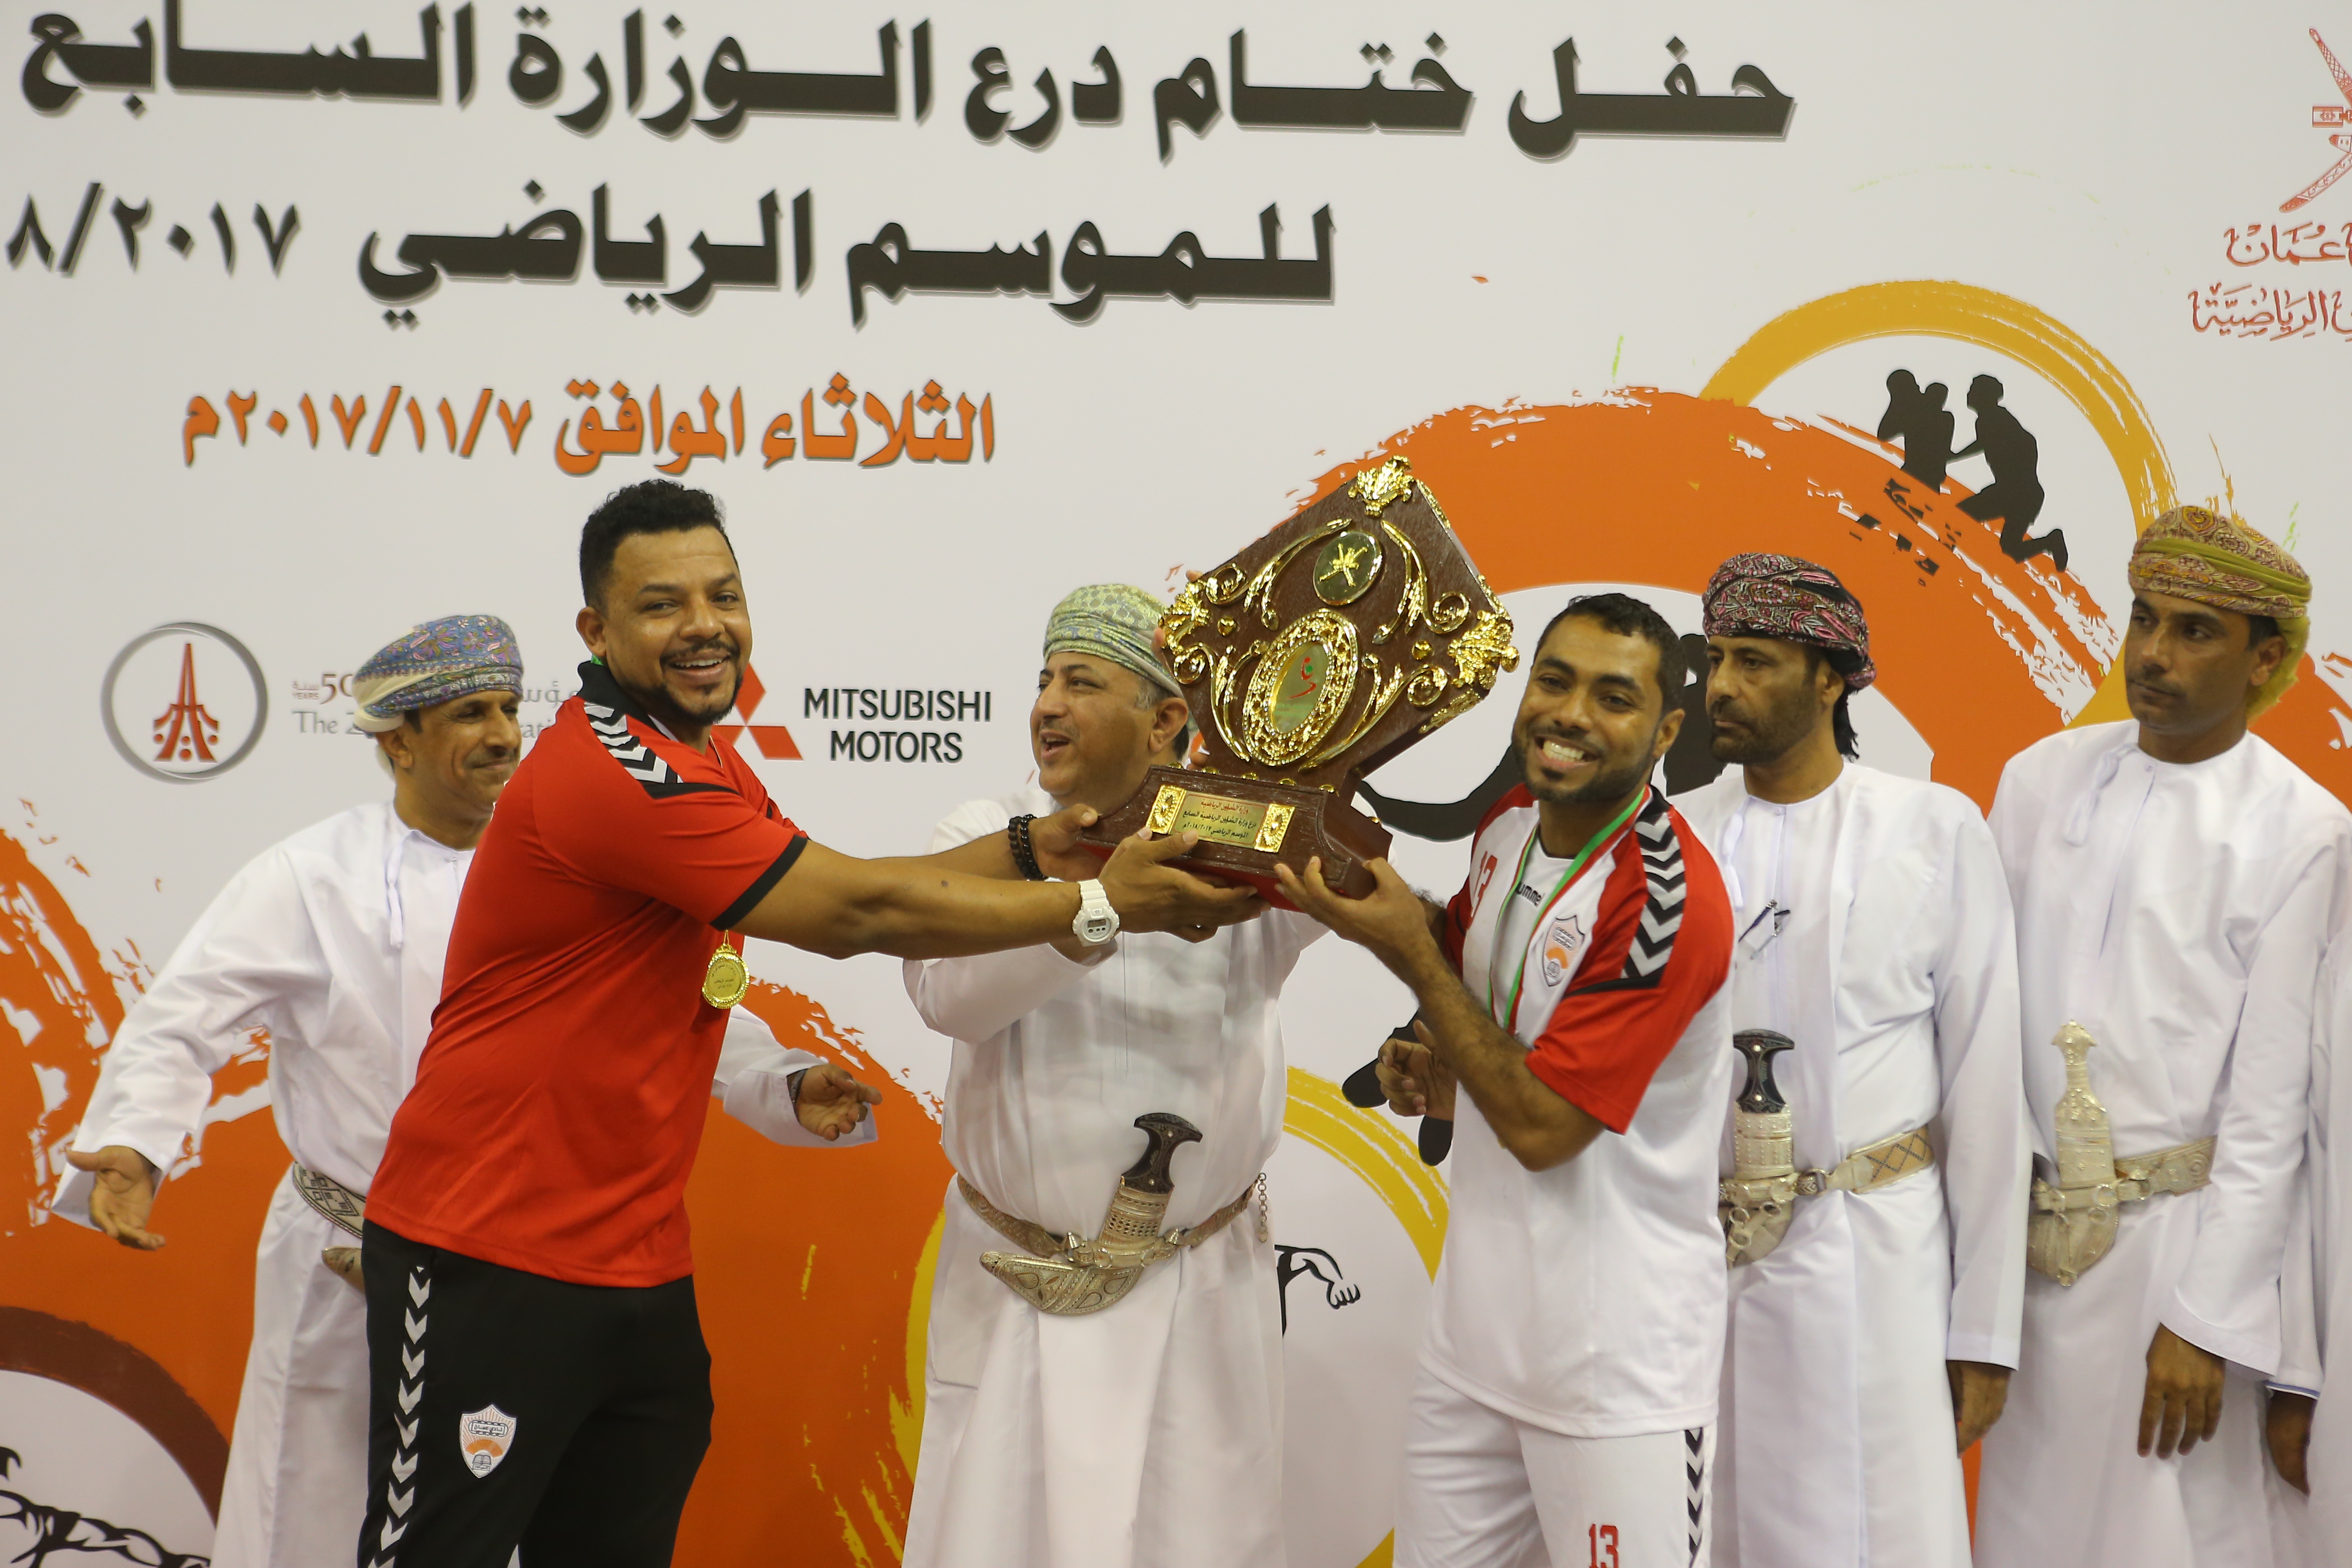 نادي عمان يظفر بلقب درع الوزارة لكرة اليد للمرة الأولى في تاريخه